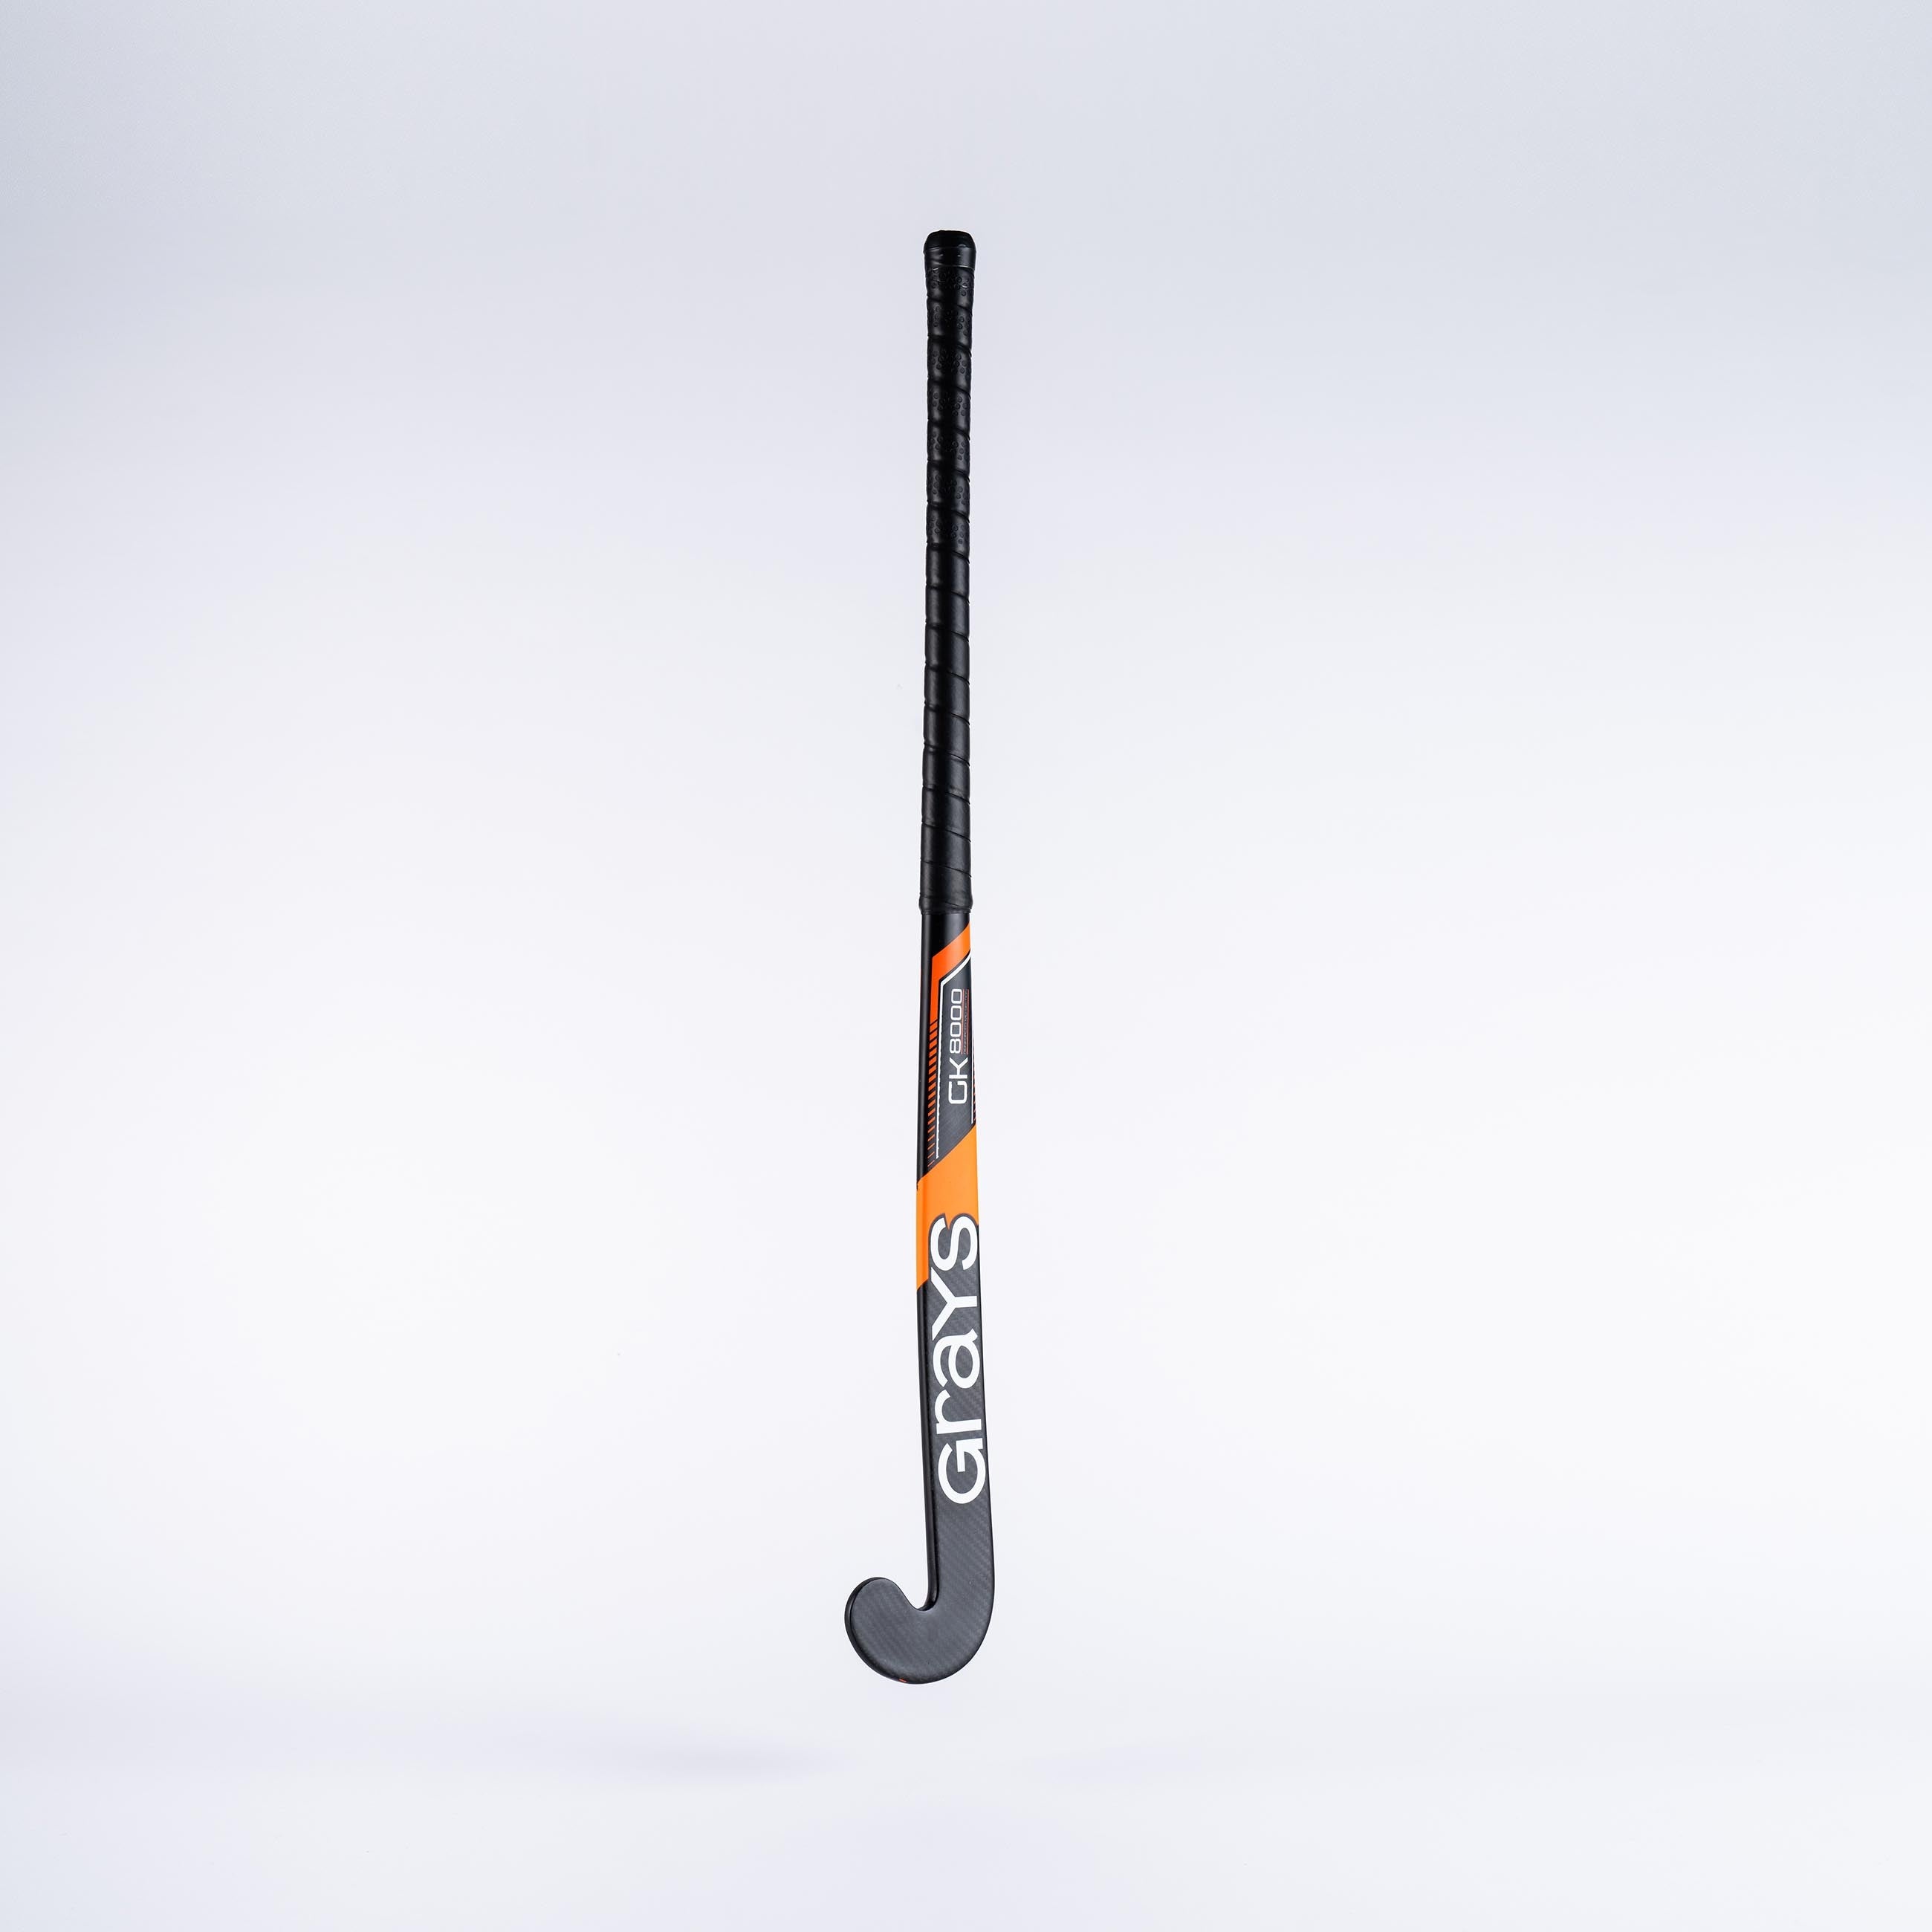 HAEB23Composite Sticks GK8000 Black & Orange, 2 Angle